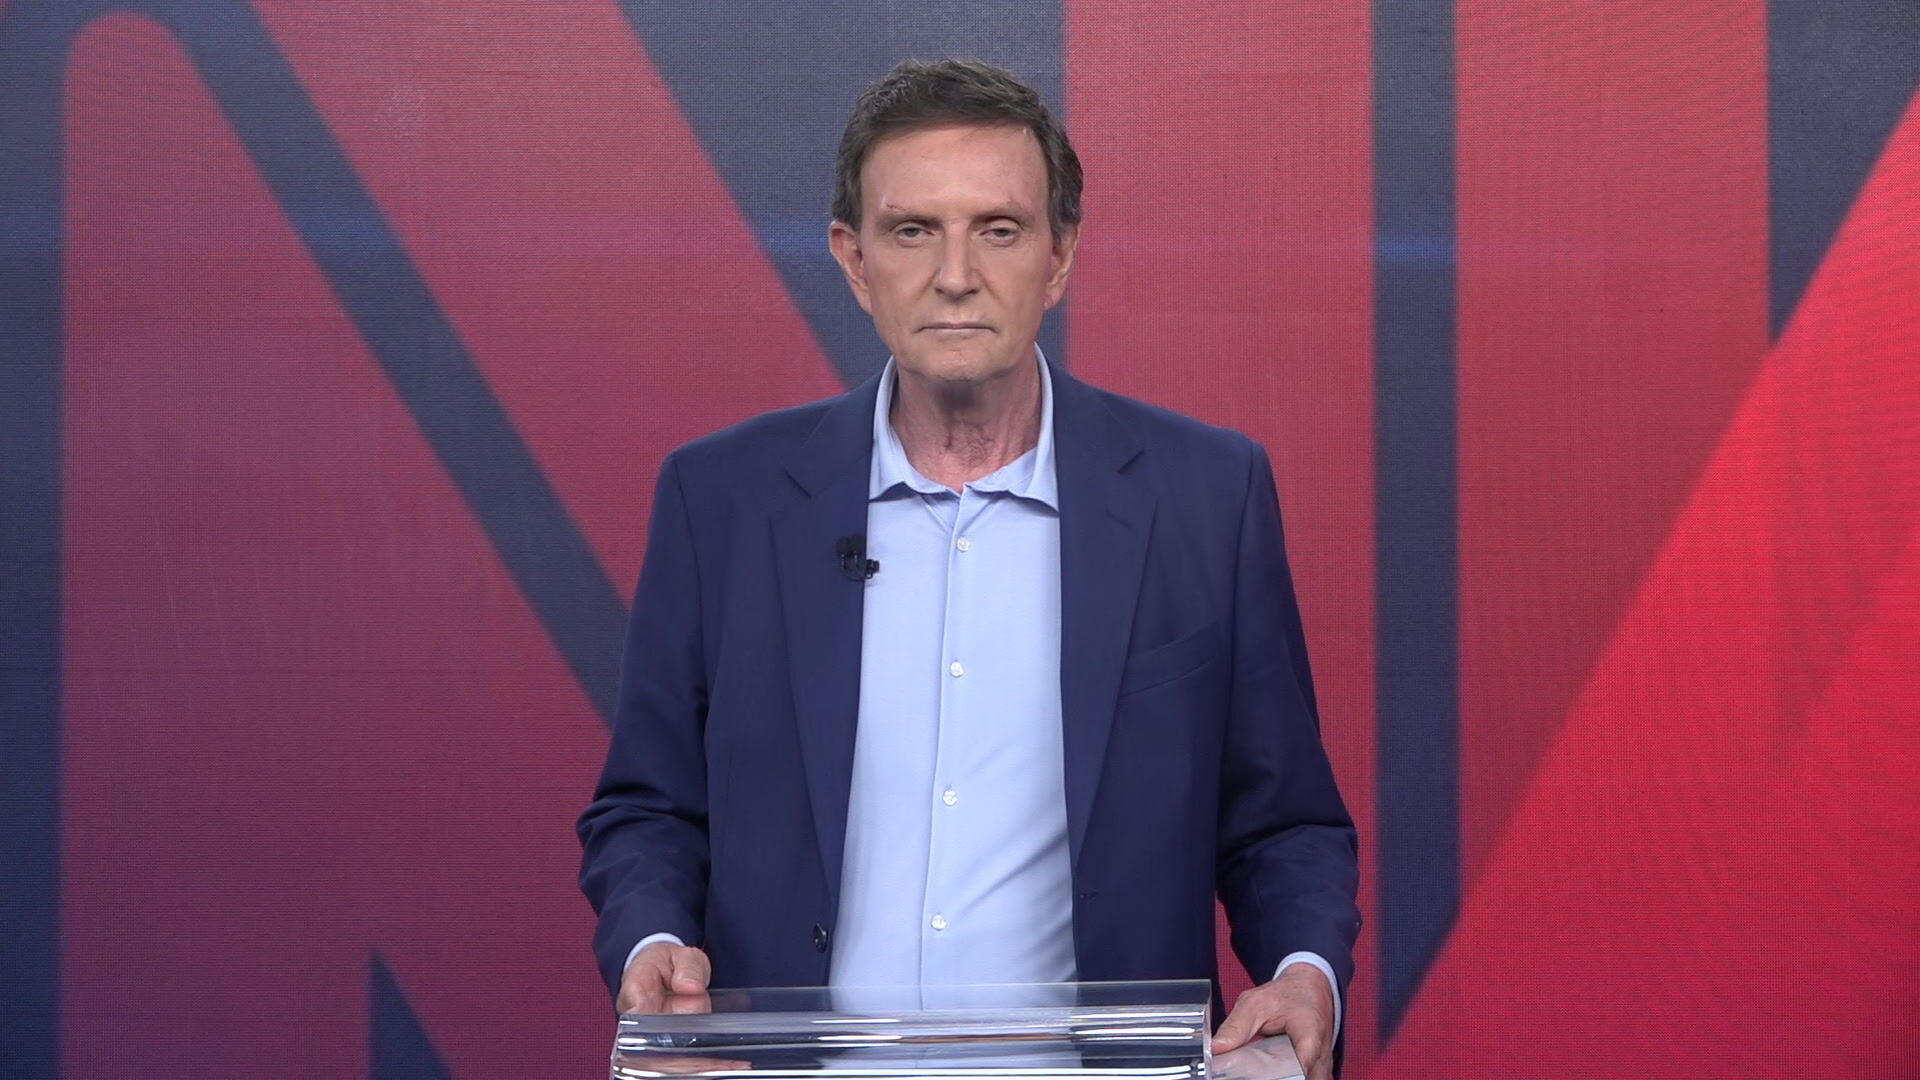 Marcelo Crivella (Republicanos) candidato a prefeito do Rio de Janeiro (17.nov.2